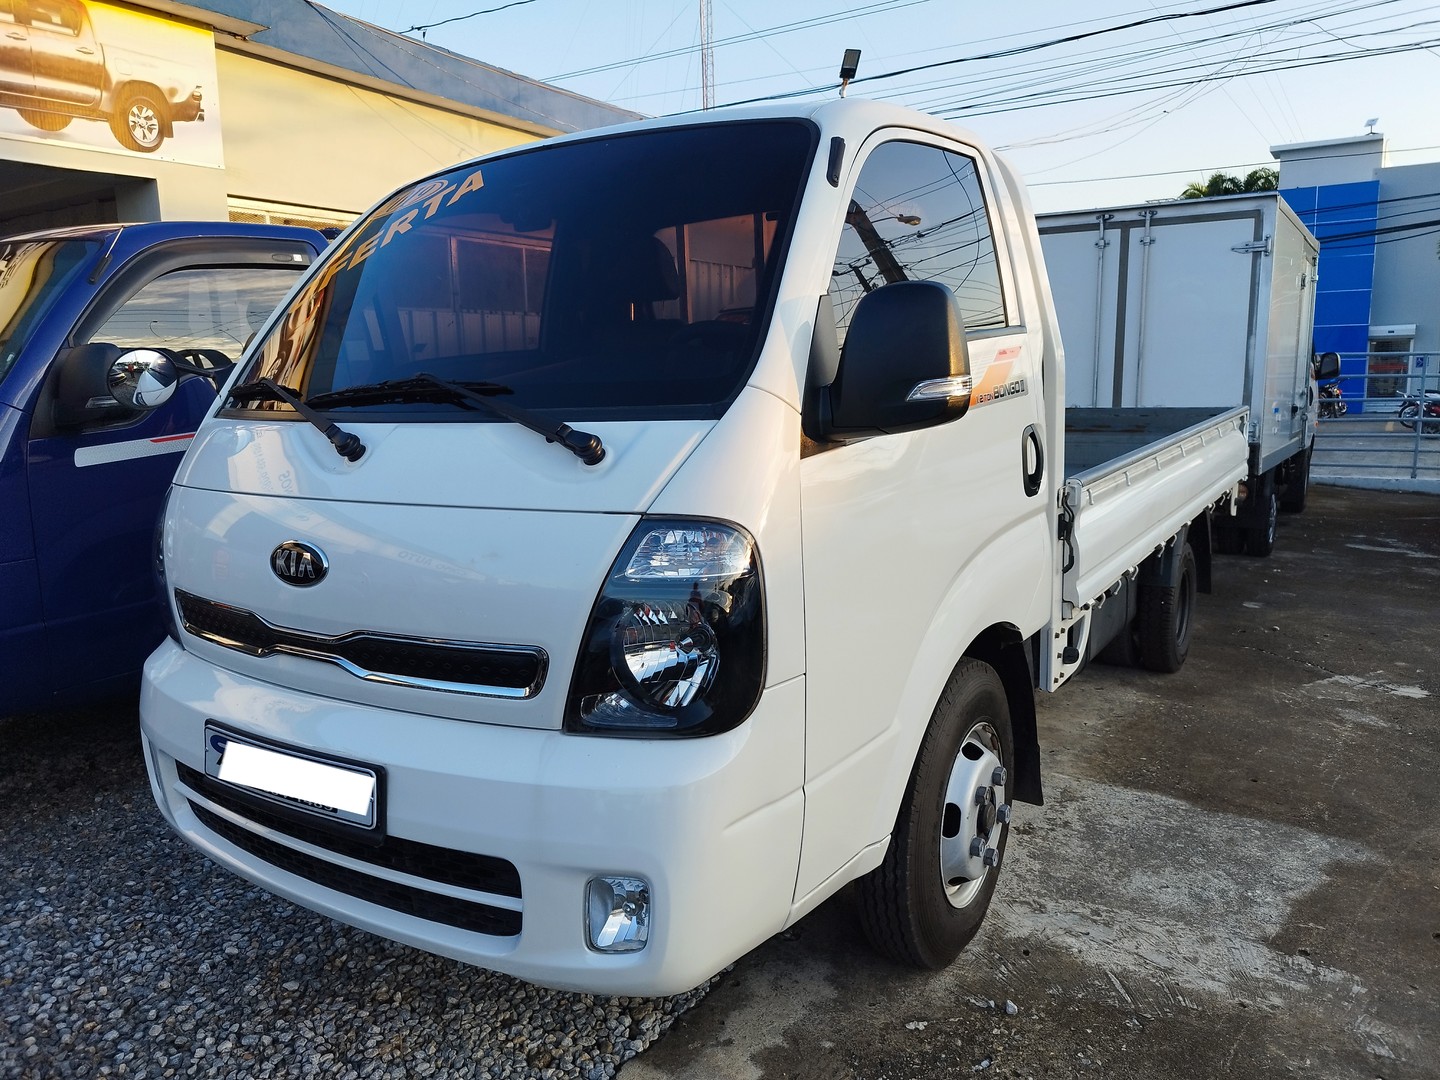 camiones y vehiculos pesados - 2019 Kia Bongo III Diesel  0